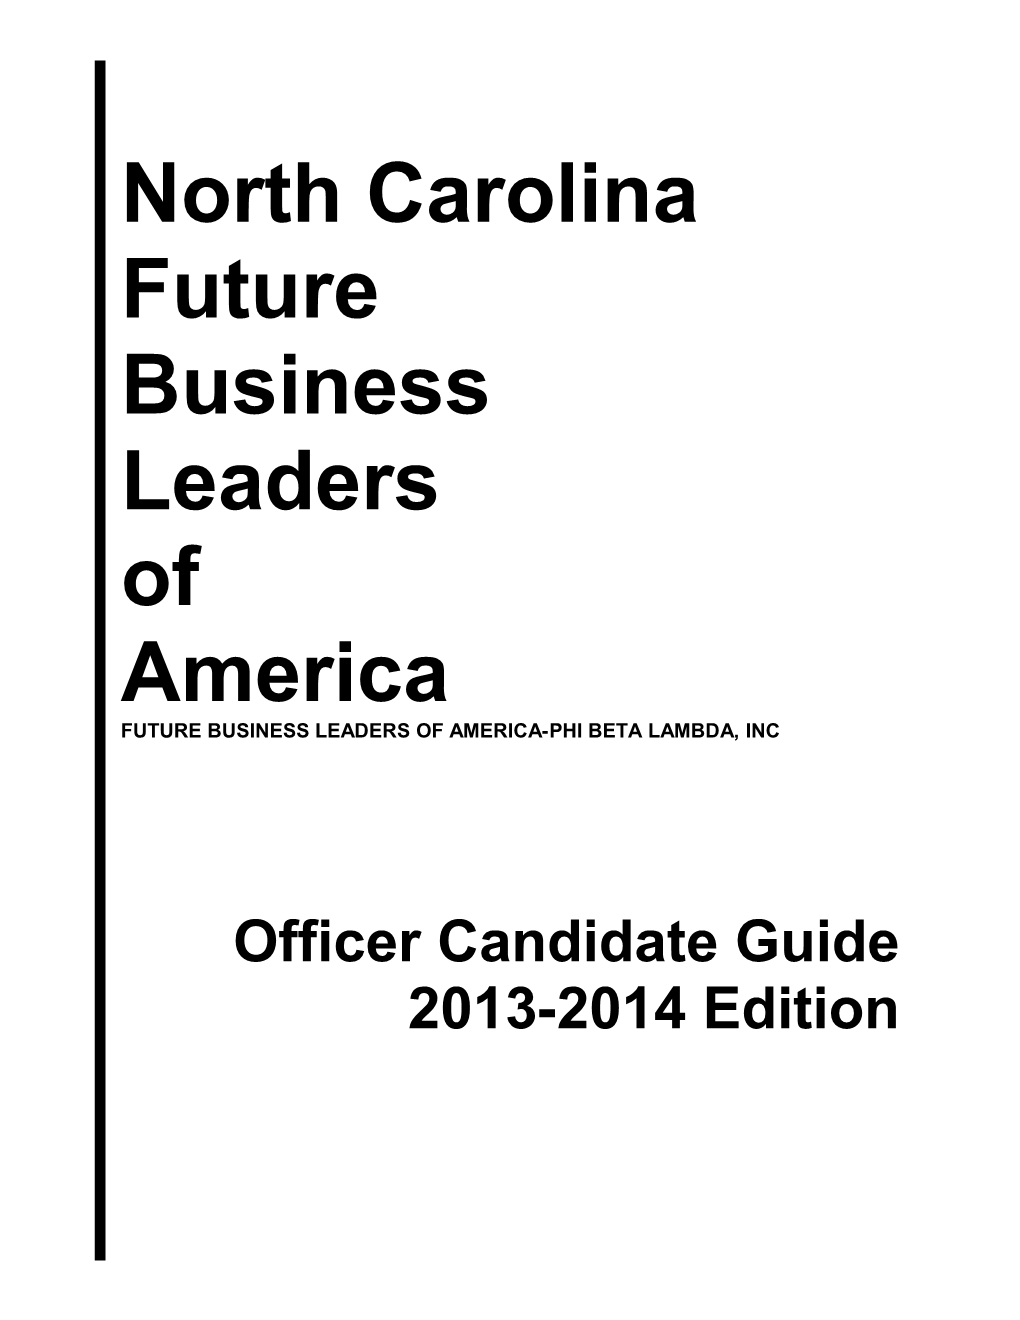 Future Business Leaders of America-Phi Beta Lambda, Inc